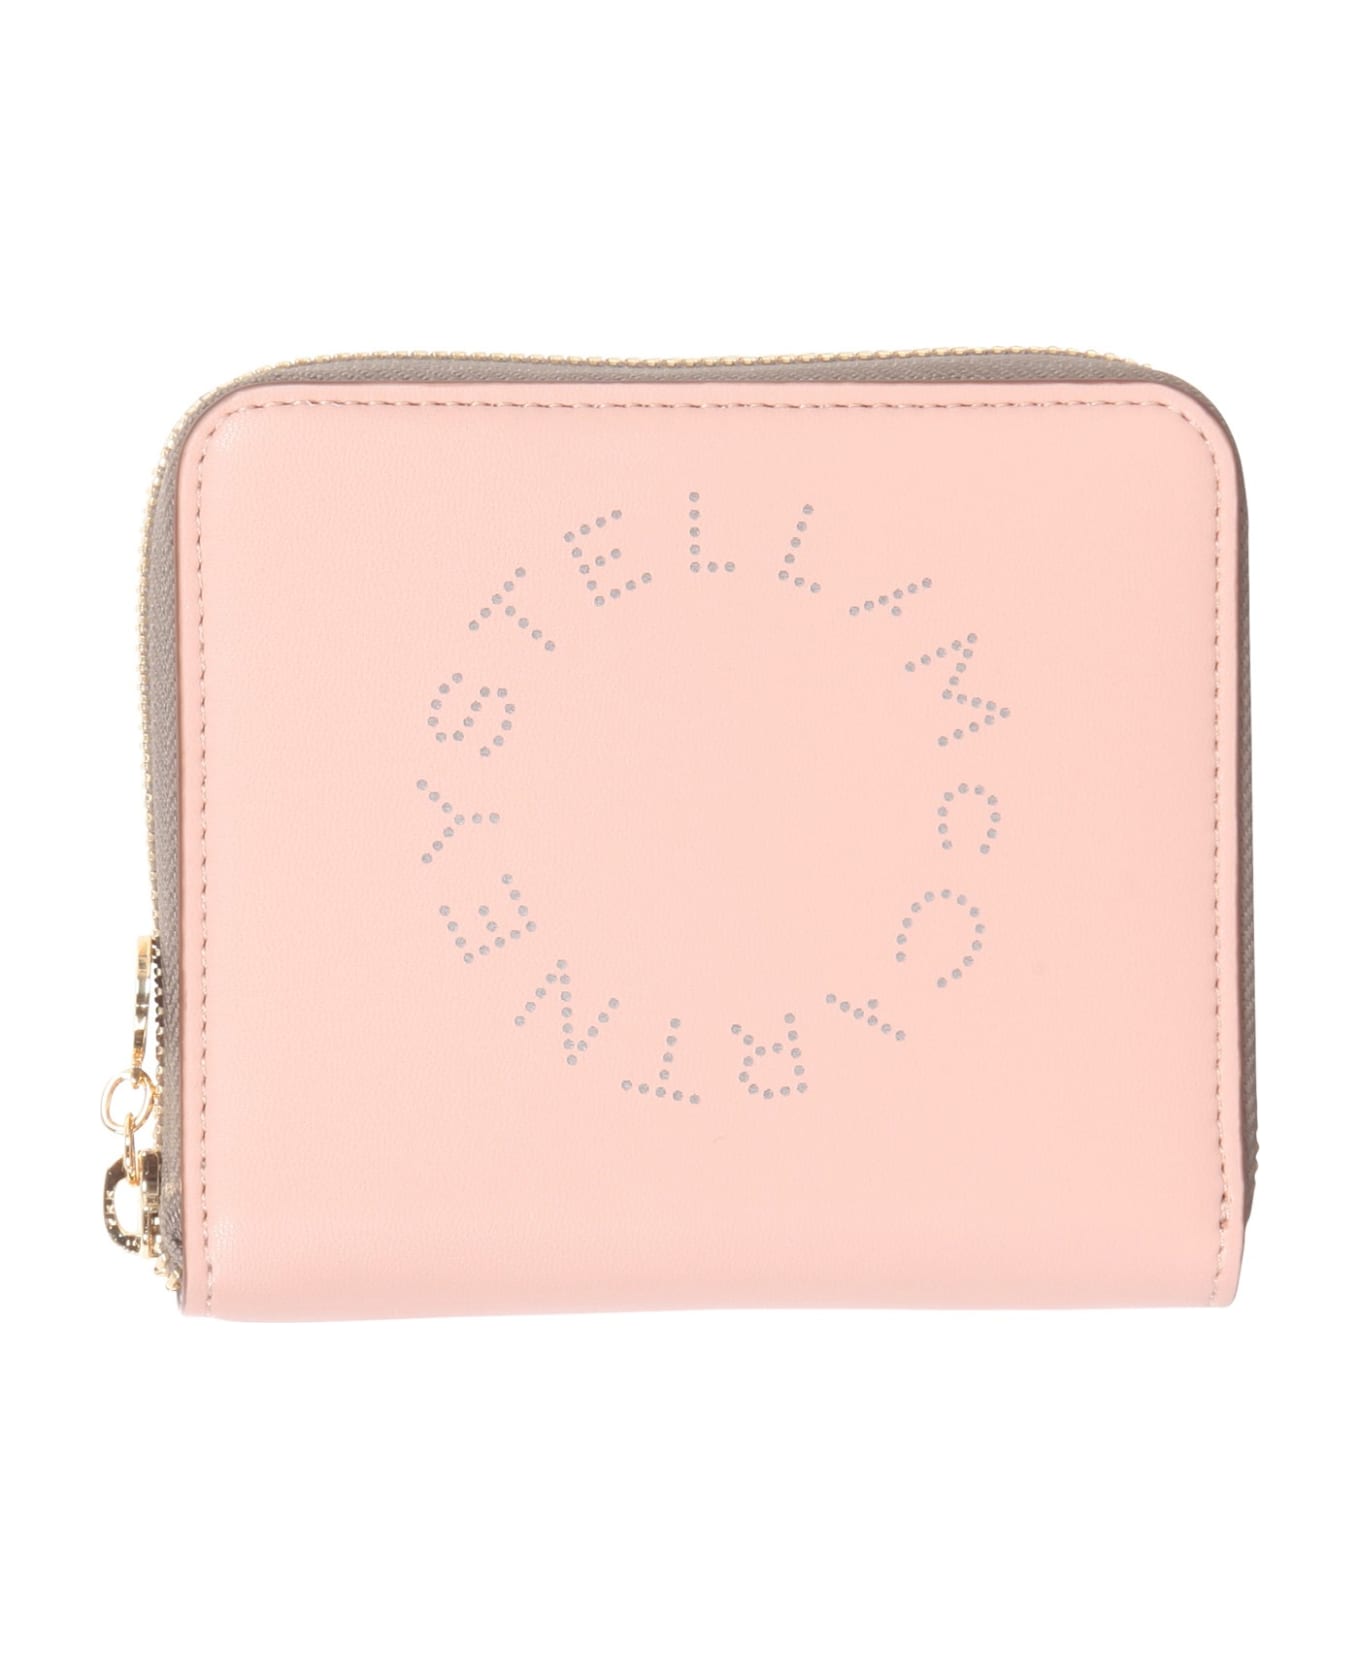 Stella McCartney Zip Around Mini Wallet - Blush